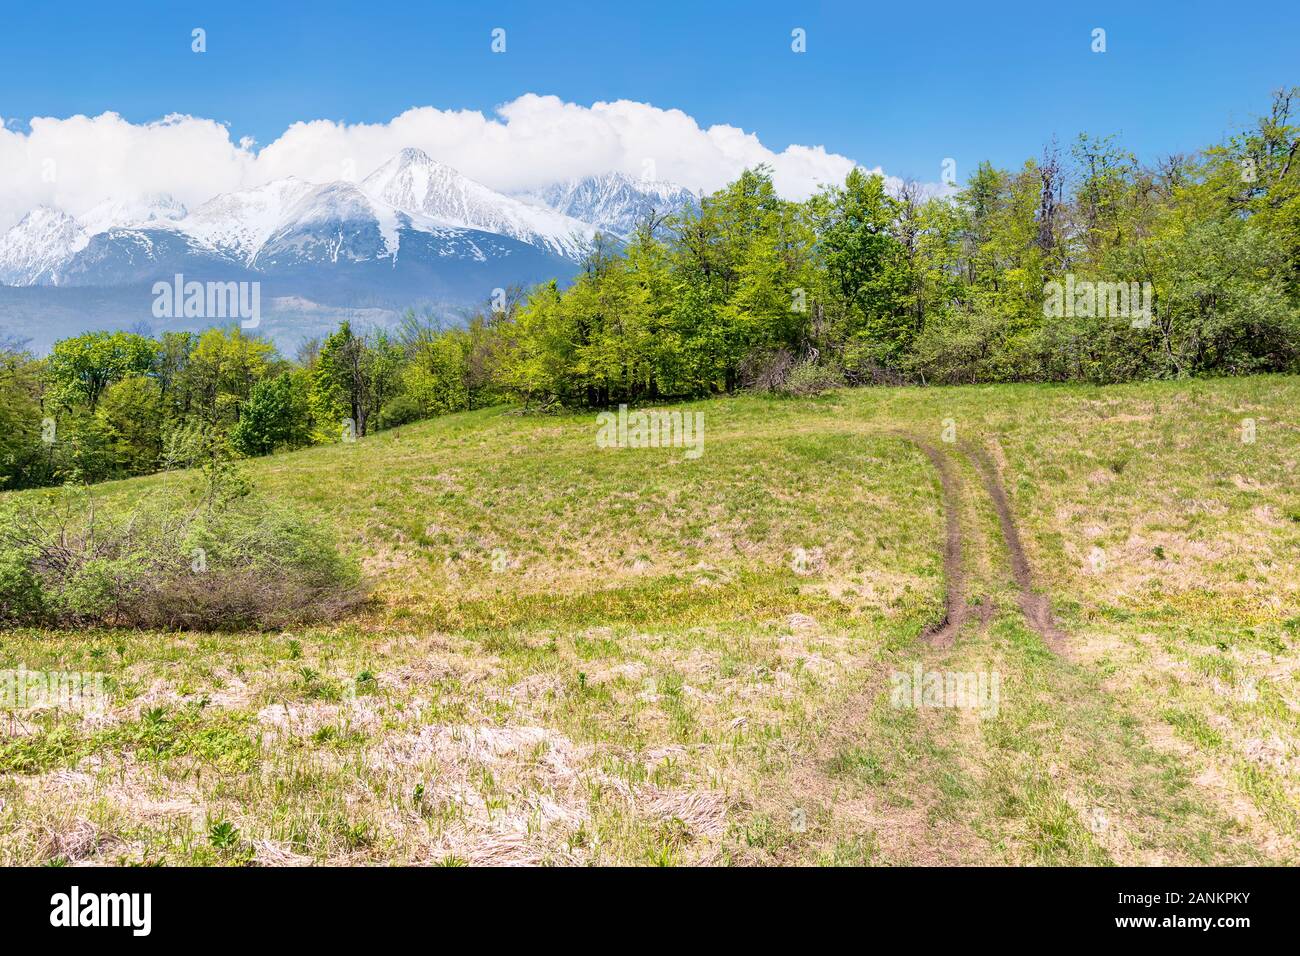 Idyllische frühling landschaft Composite. Wiese unter den Wald. Hohe Tatra Bergkamm mit Schnee bedeckten Gipfeln in der Ferne. sonniges Wetter mit Stockfoto